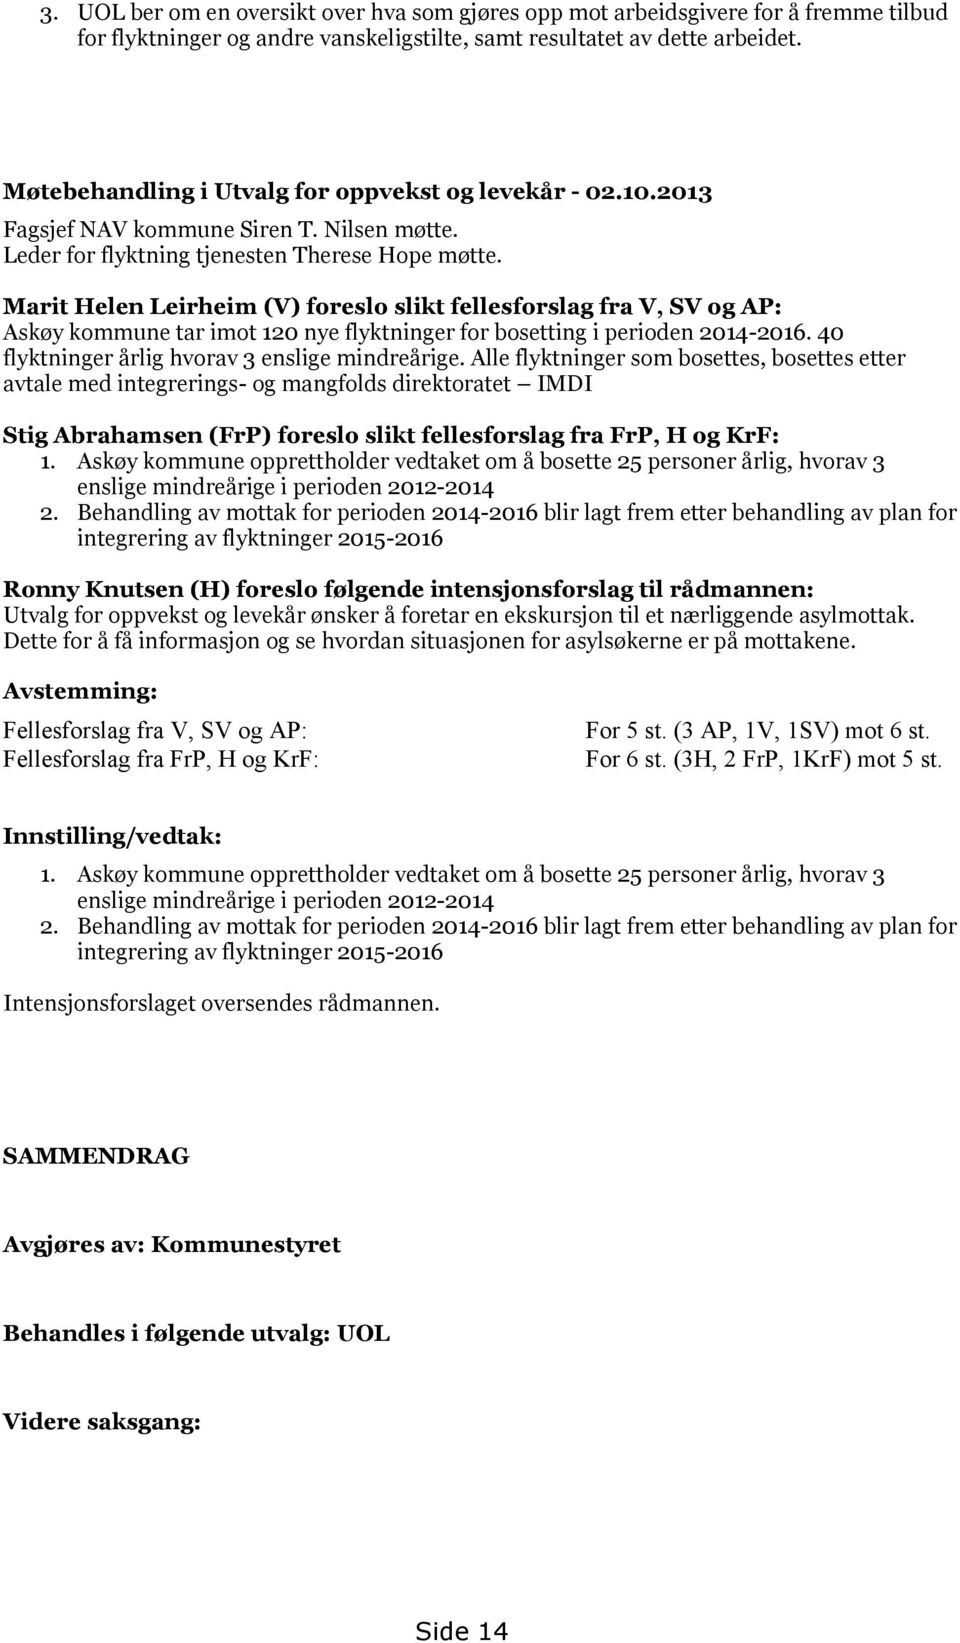 Marit Helen Leirheim (V) foreslo slikt fellesforslag fra V, SV og AP: Askøy kommune tar imot 120 nye flyktninger for bosetting i perioden 2014-2016. 40 flyktninger årlig hvorav 3 enslige mindreårige.